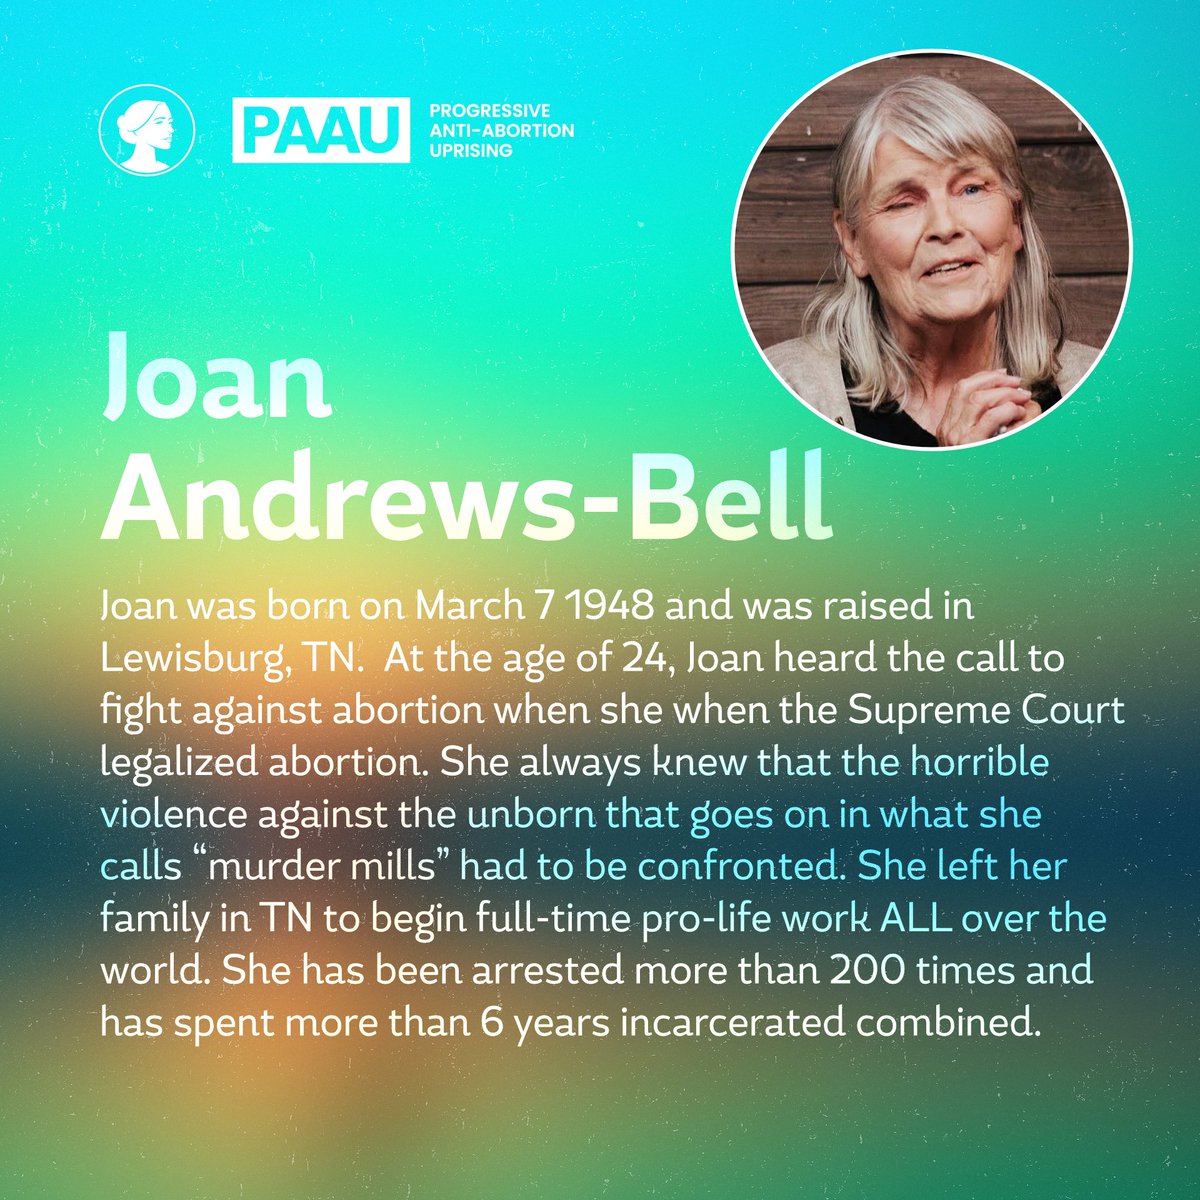 7. Joan Andrews-Bell